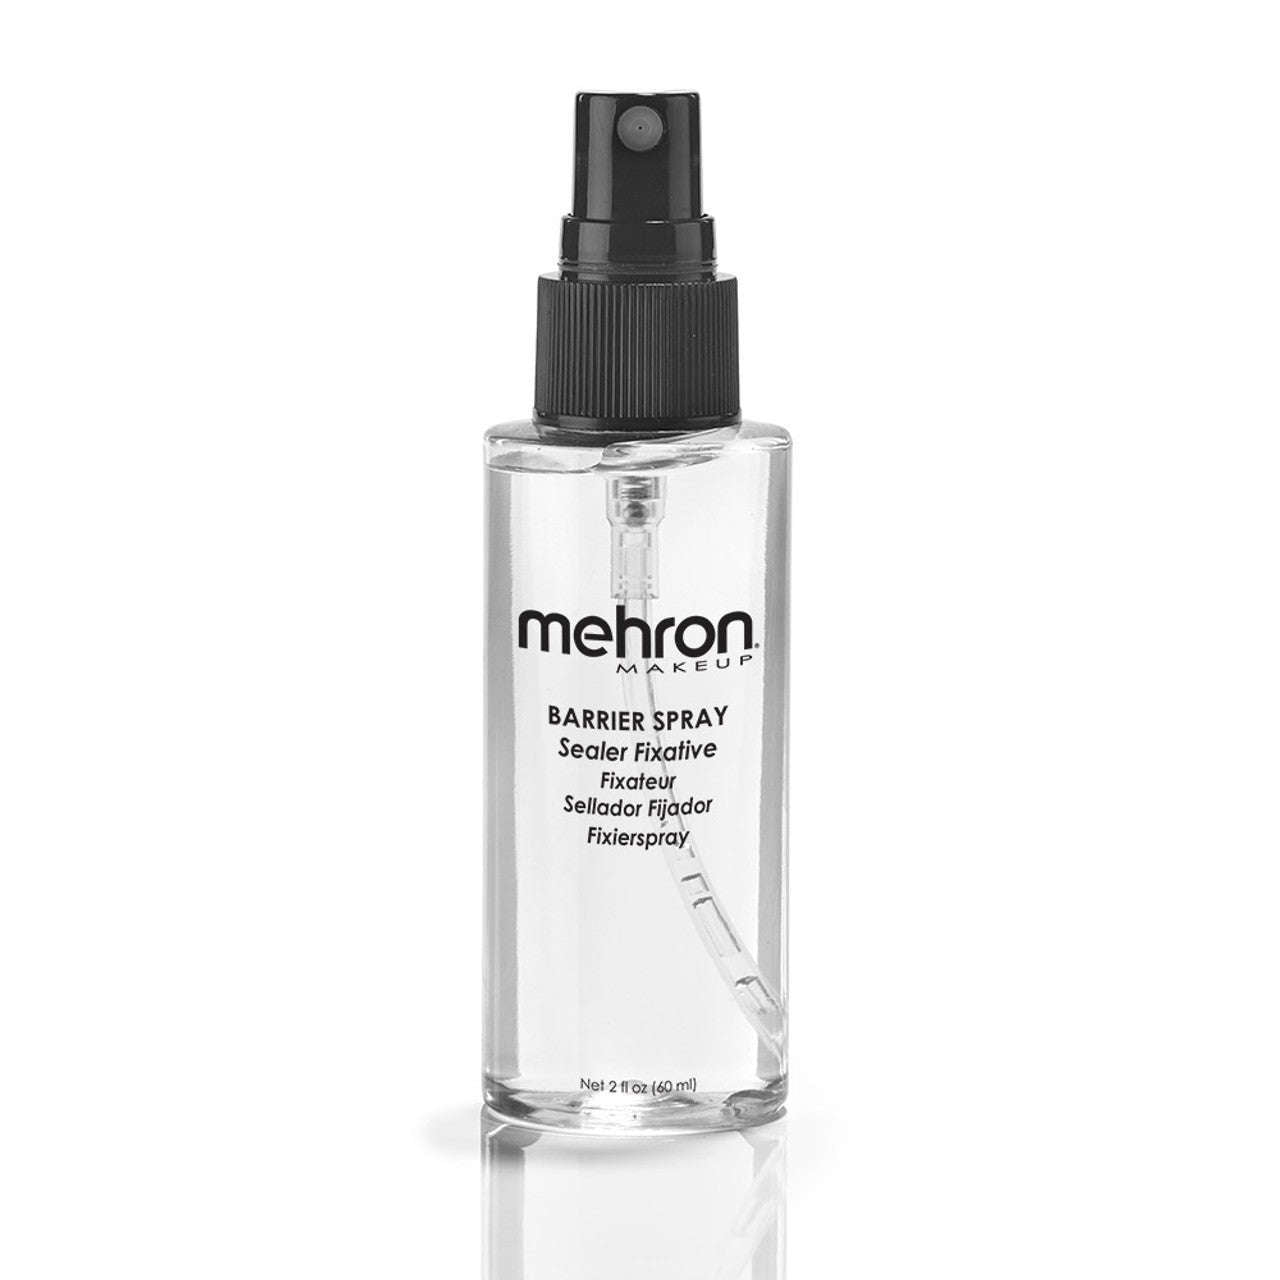 Mehron "Barrier Spray" Skin Protectant & Setting Spray